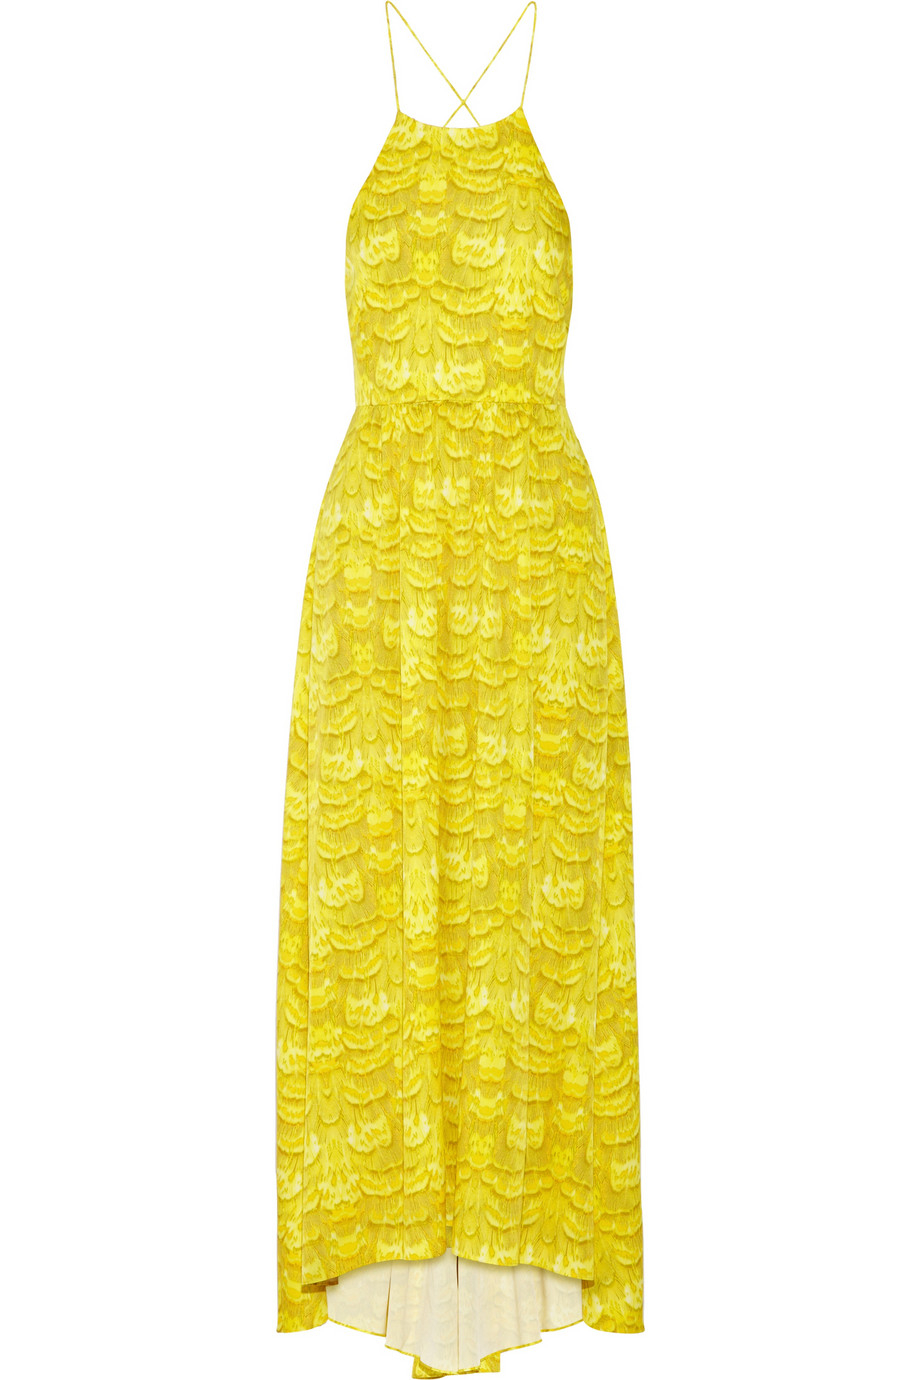 Lyst - Tibi Printed Crepe Maxi Dress in Yellow